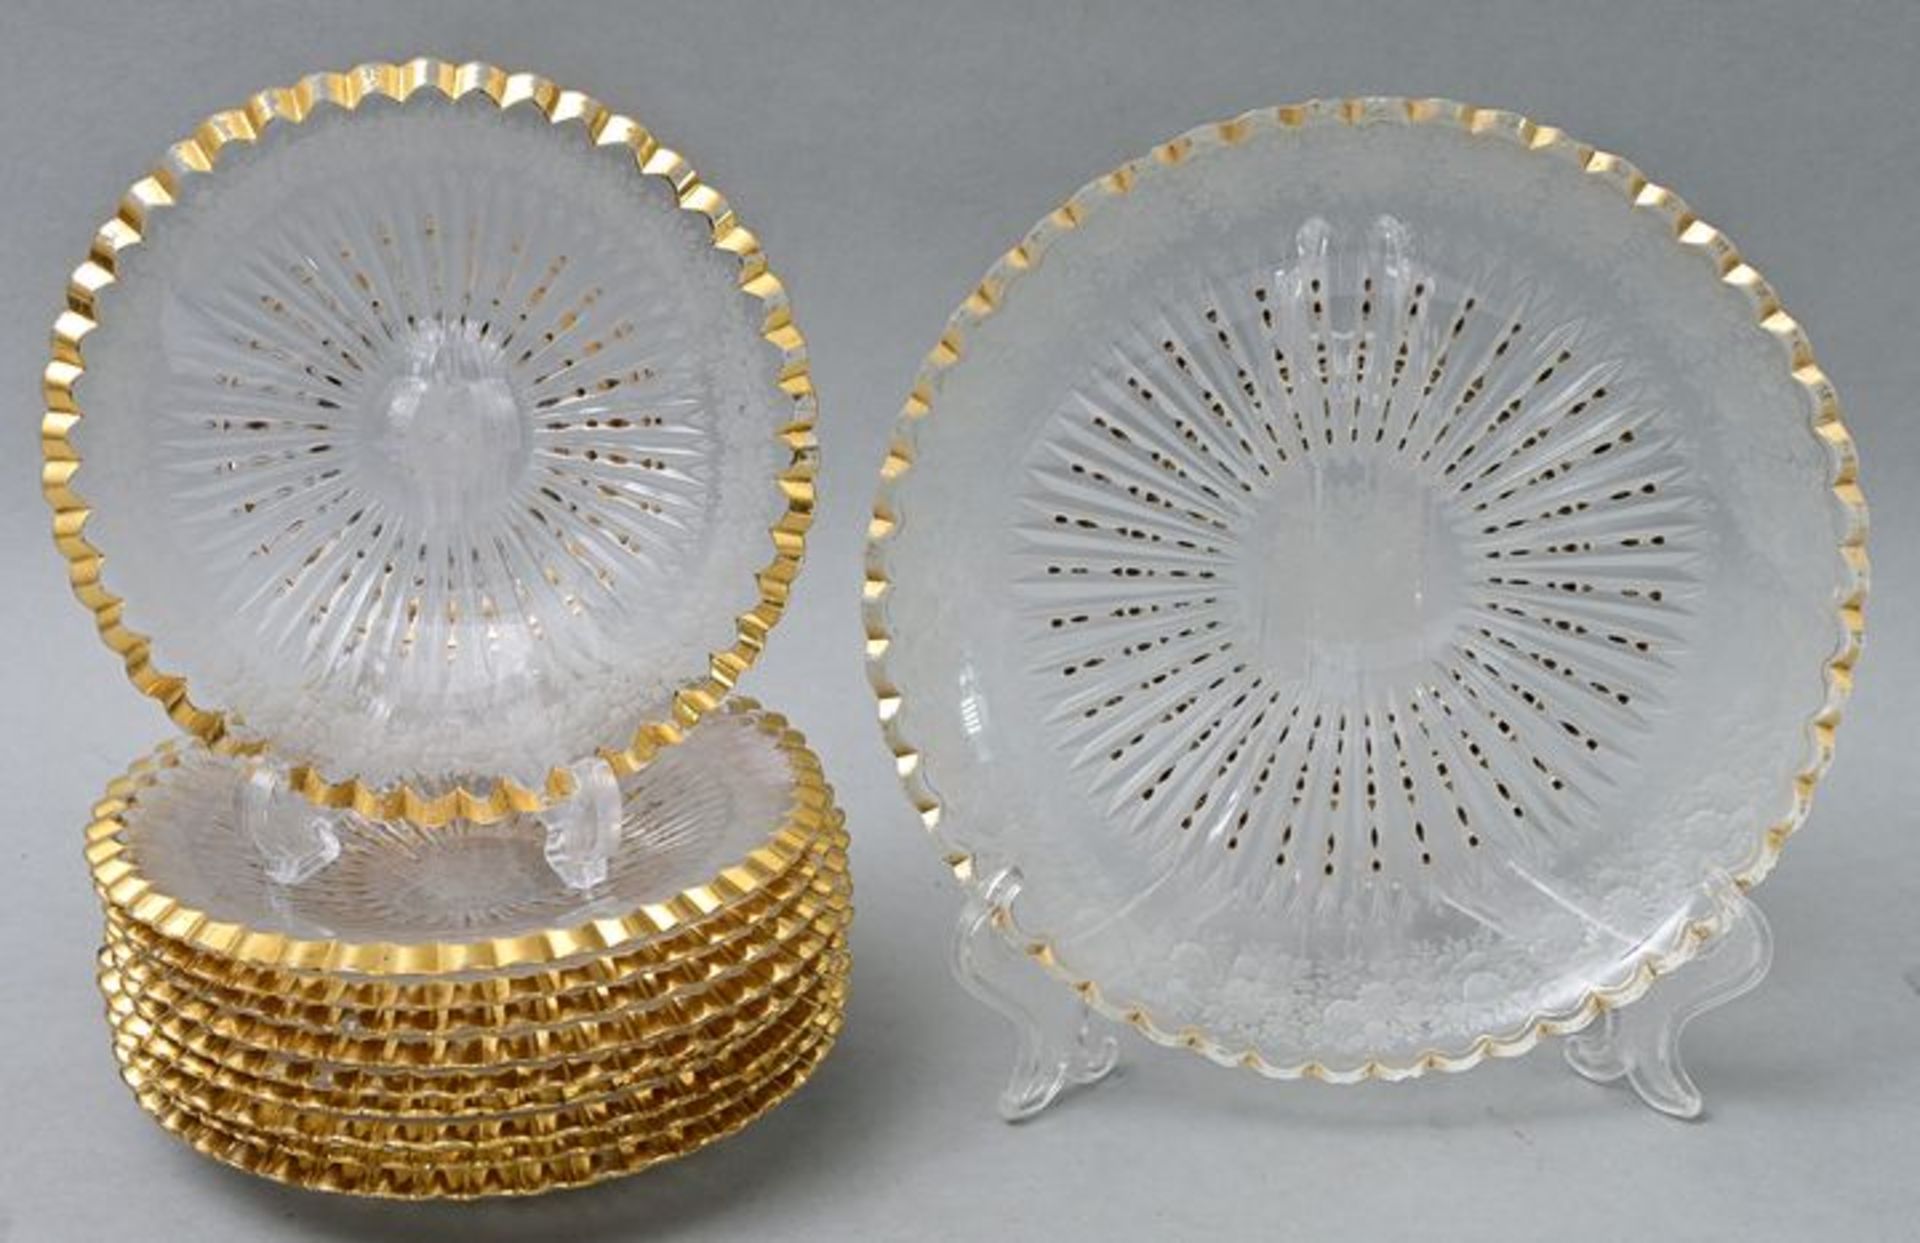 Glasteller/ glass plates